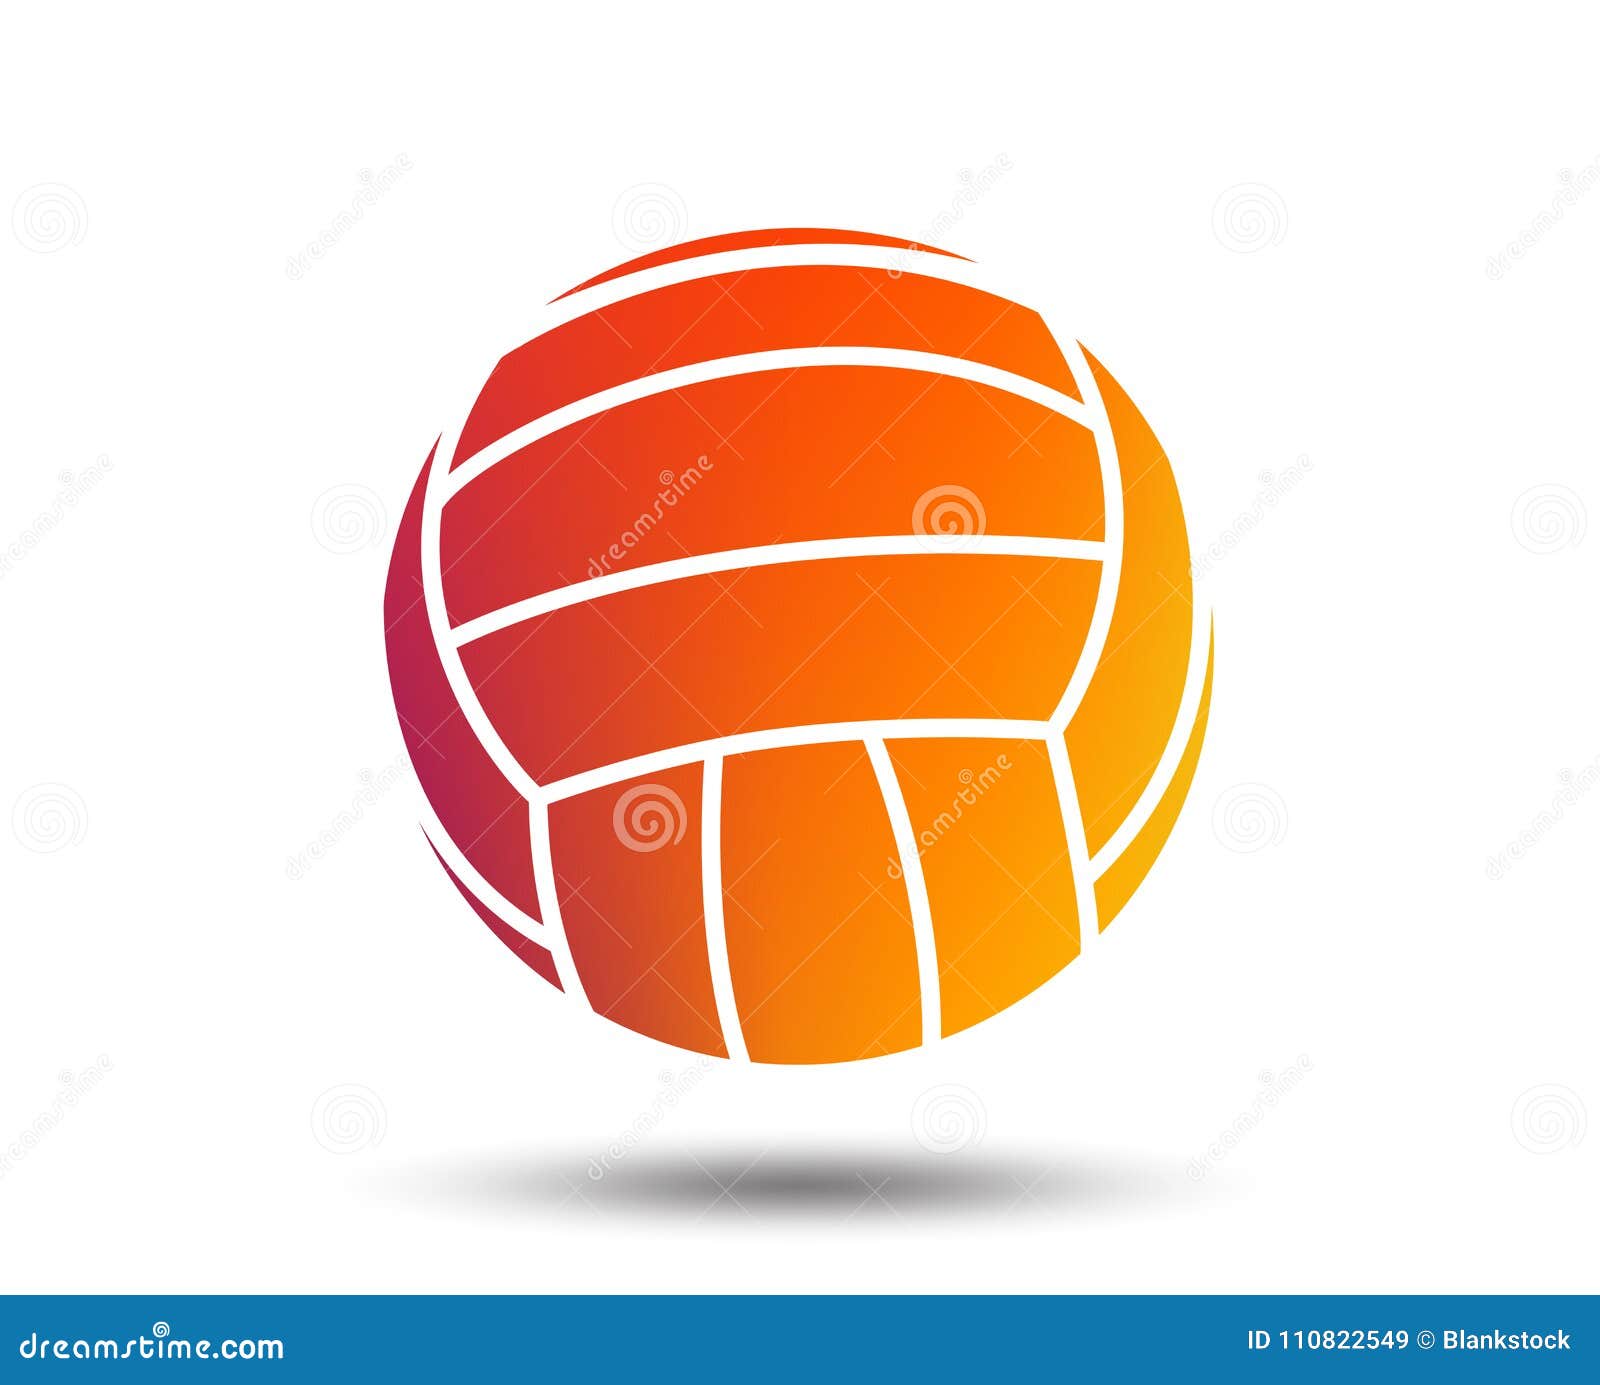 Значок знака волейбола Символ спорта пляжа Запачканный элемент дизайна градиента Яркий графический плоский значок вектор